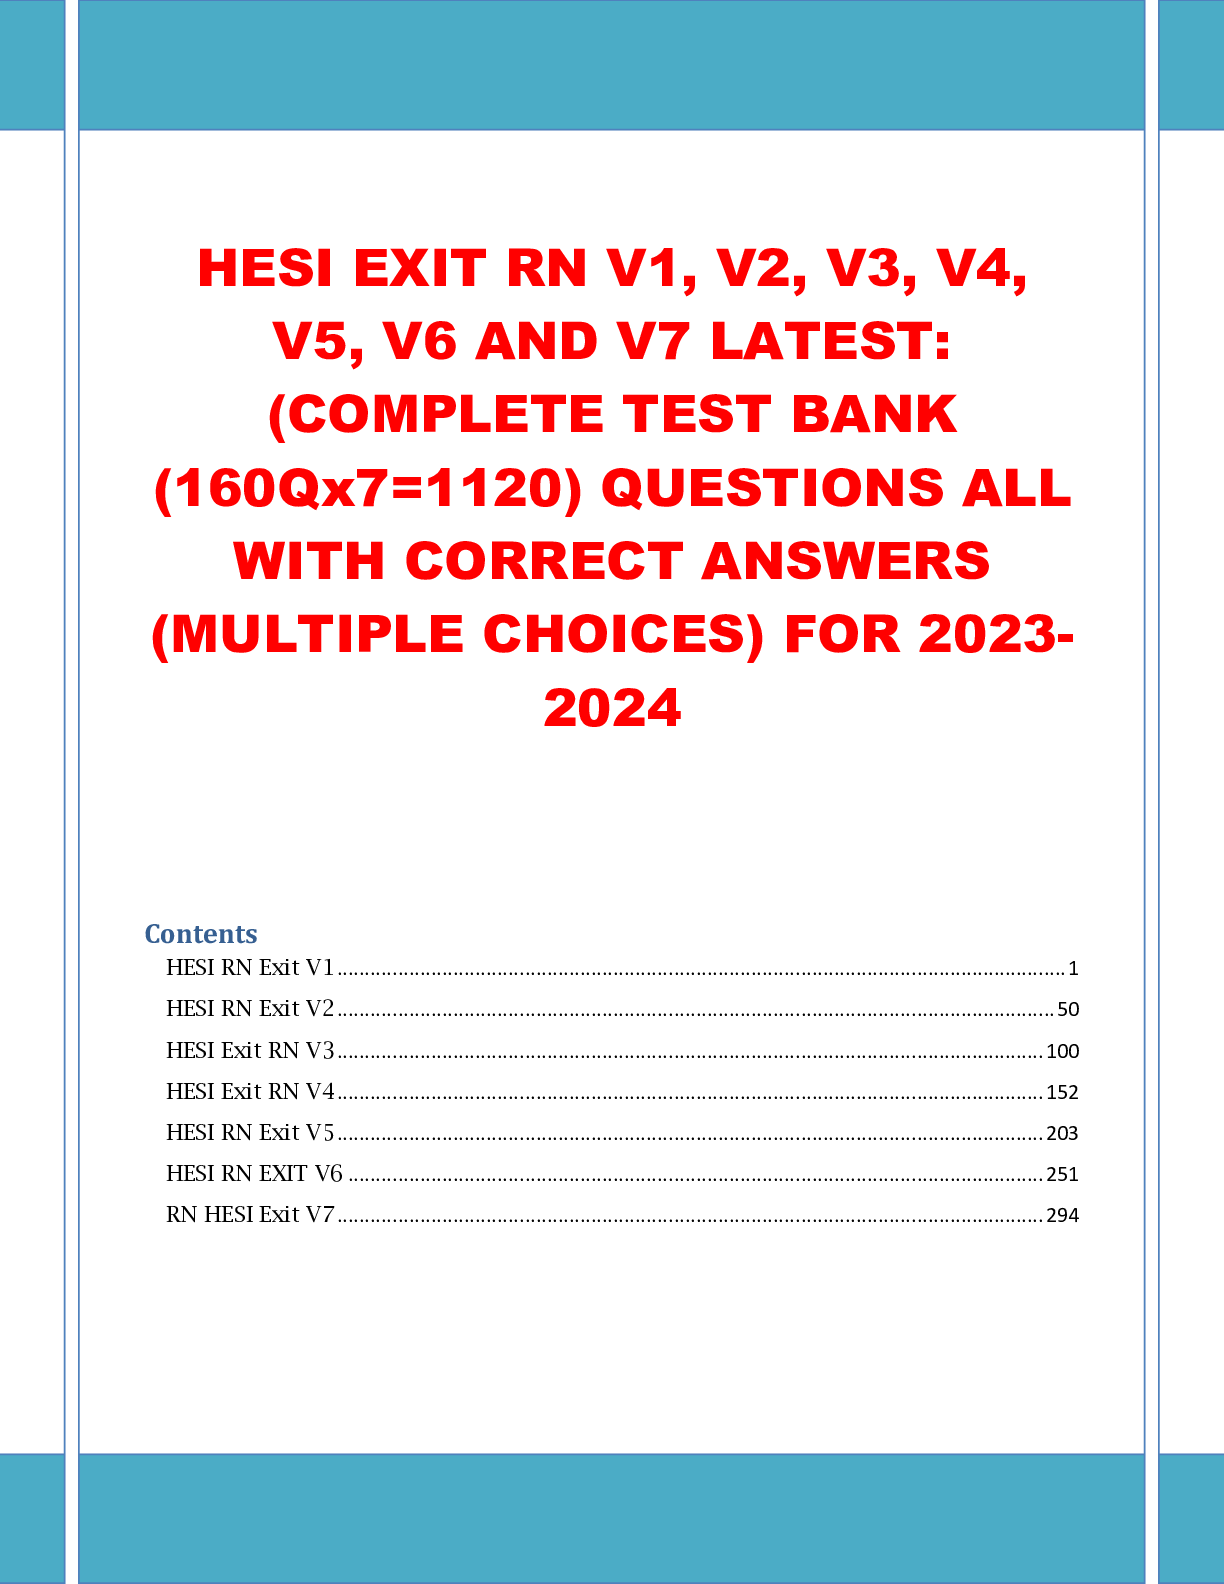 HESI EXIT RN V1, V2, V3, V4, V5, V6 AND V7 LATEST TEST BANK